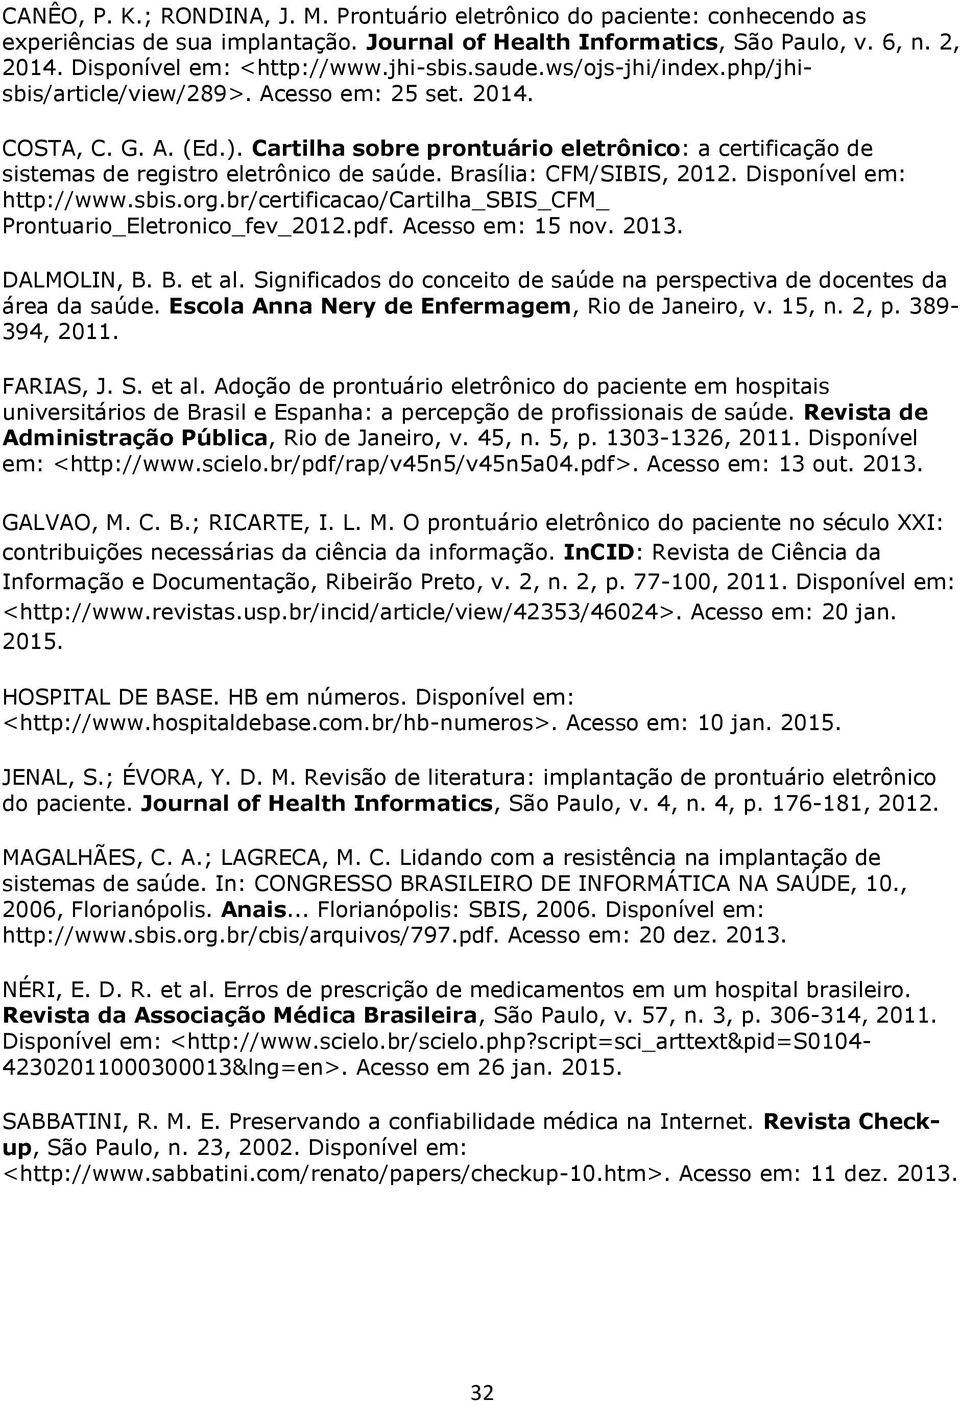 Cartilha sobre prontuário eletrônico: a certificação de sistemas de registro eletrônico de saúde. Brasília: CFM/SIBIS, 2012. Disponível em: http://www.sbis.org.